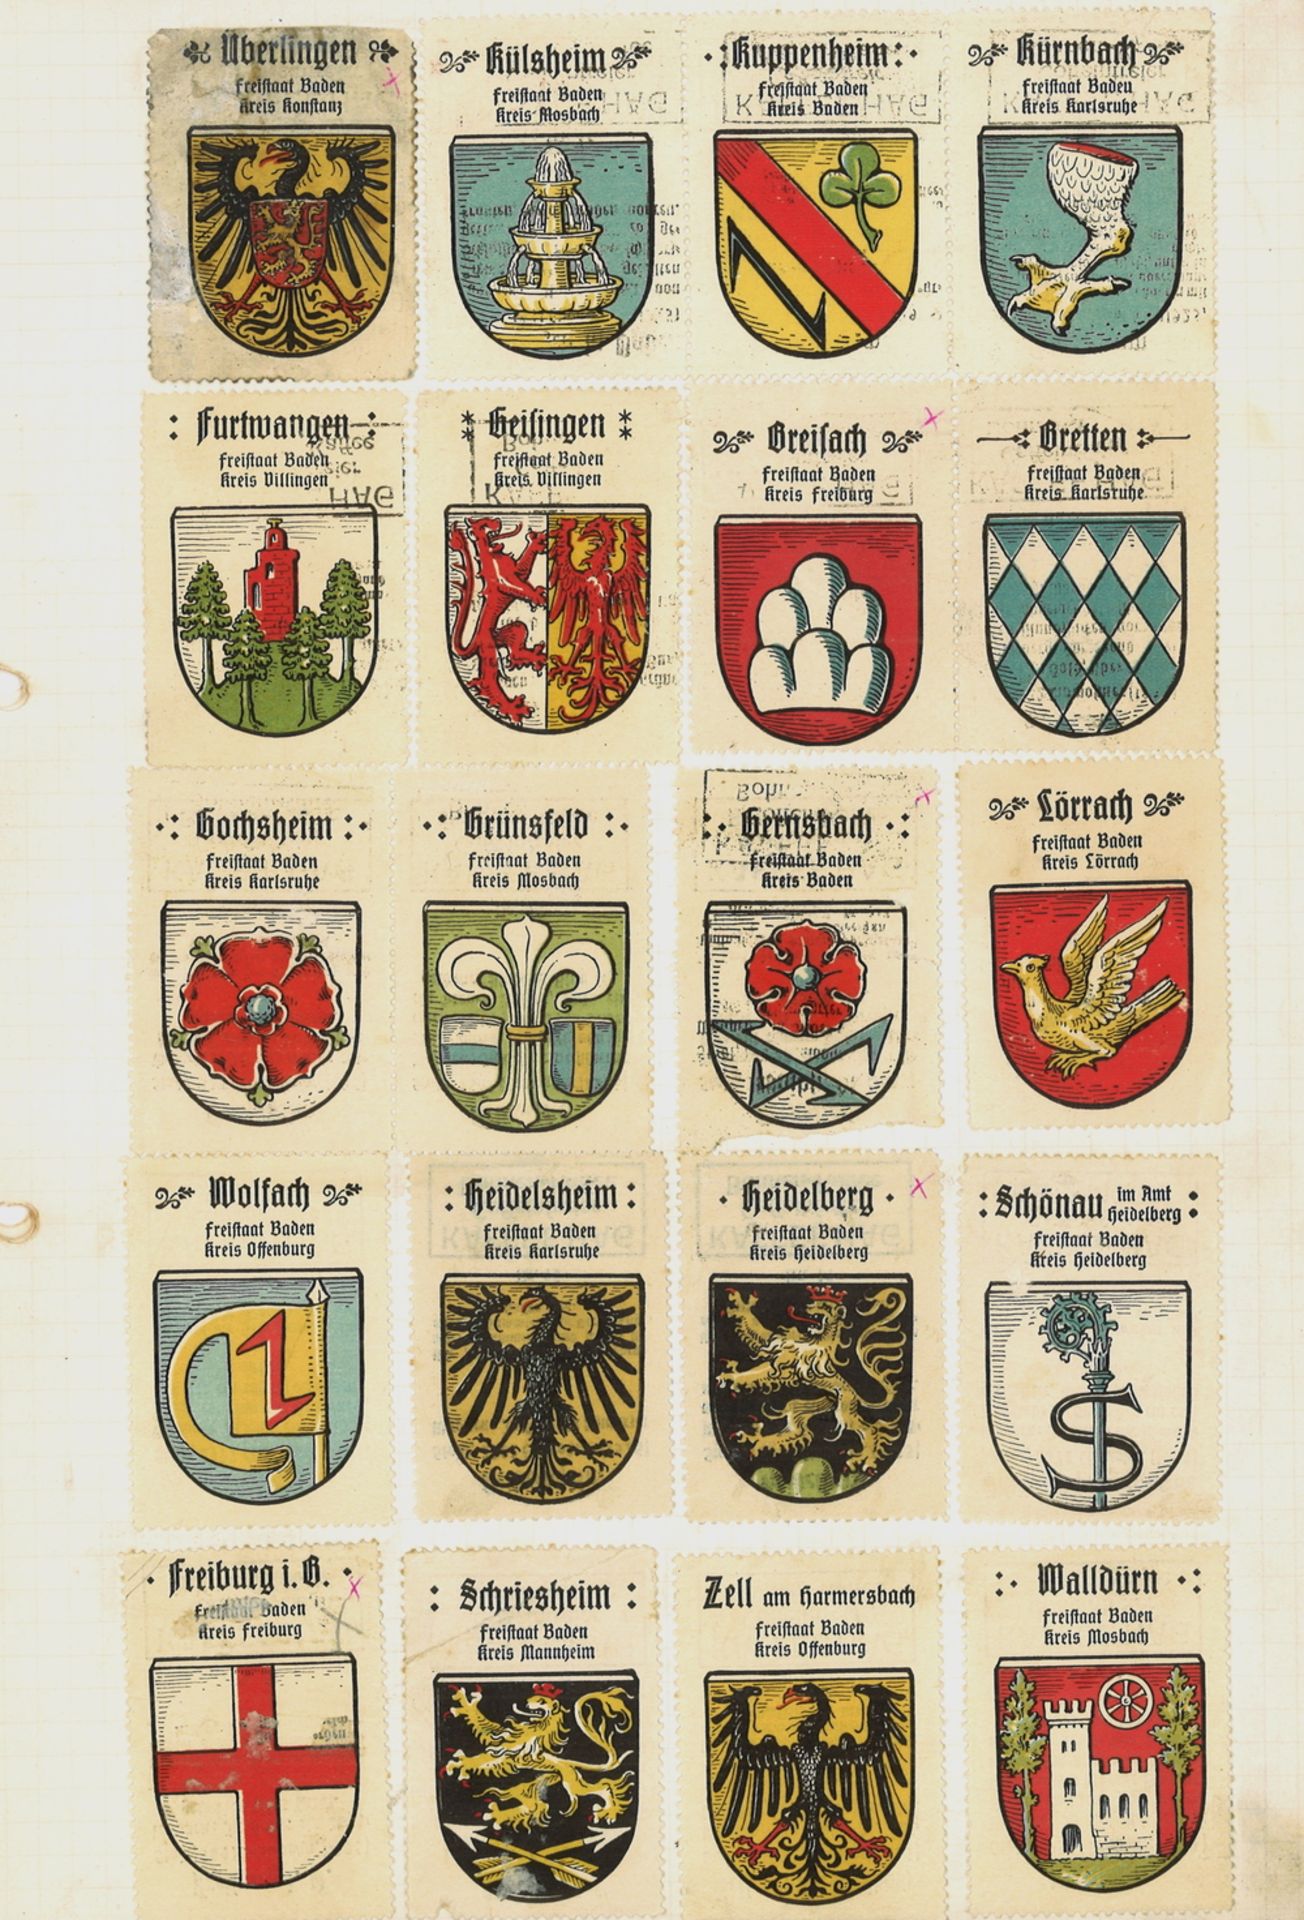 über 400 verschiedene Werbemarken "Kaffee Hag" mit Deutschen Ortswappen, auf Albenblätter geklebt.